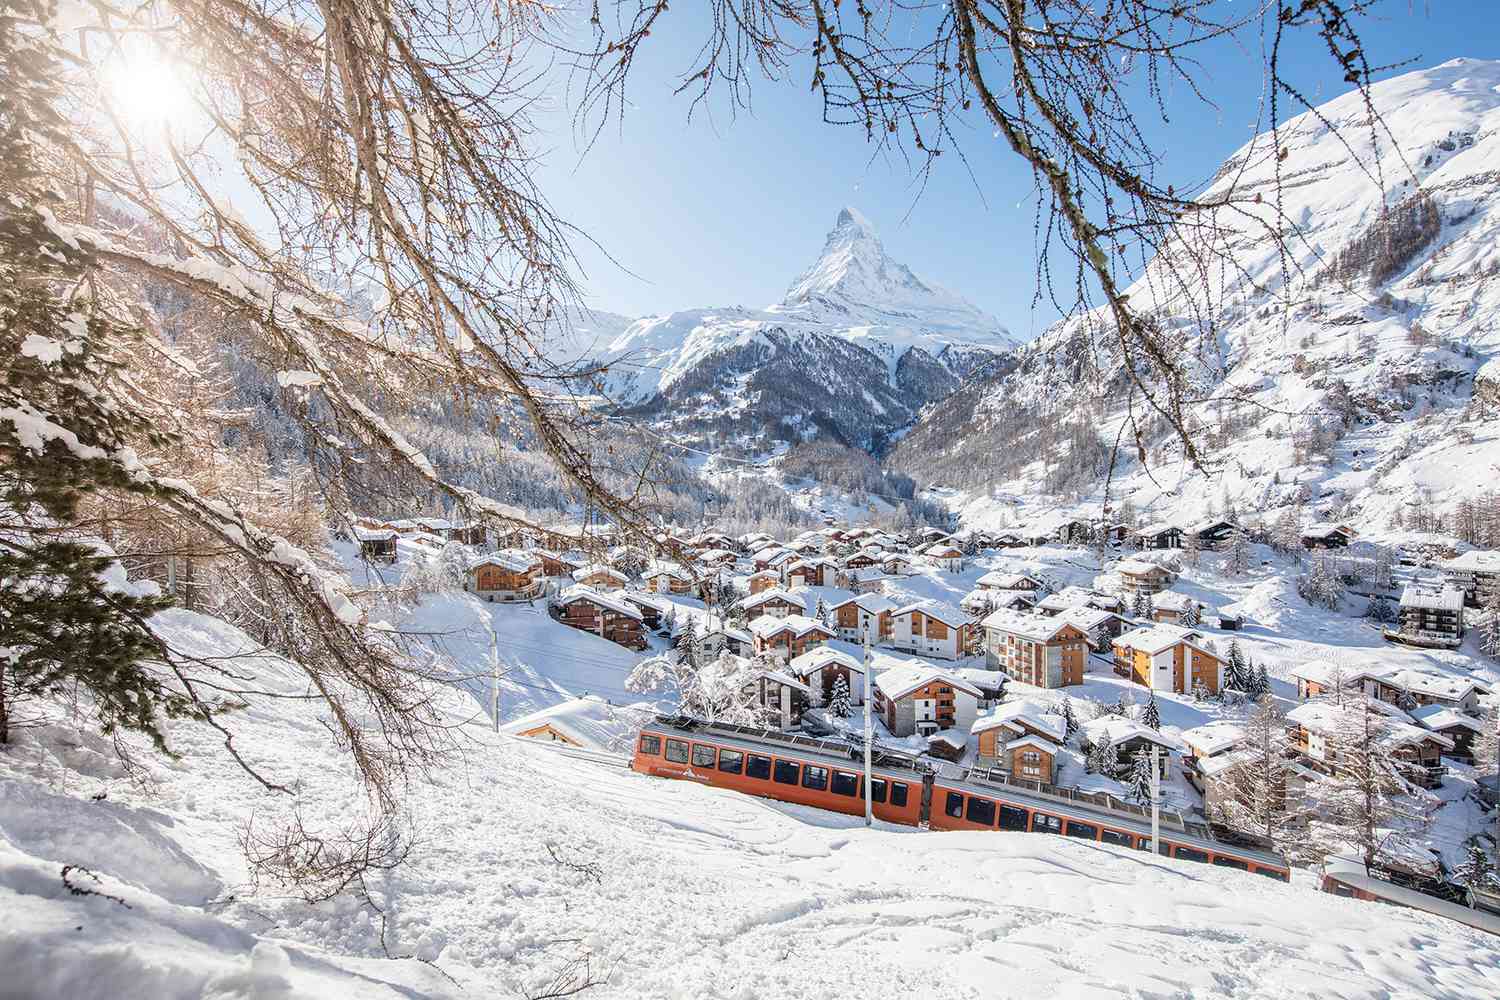 Swiss Ski Town